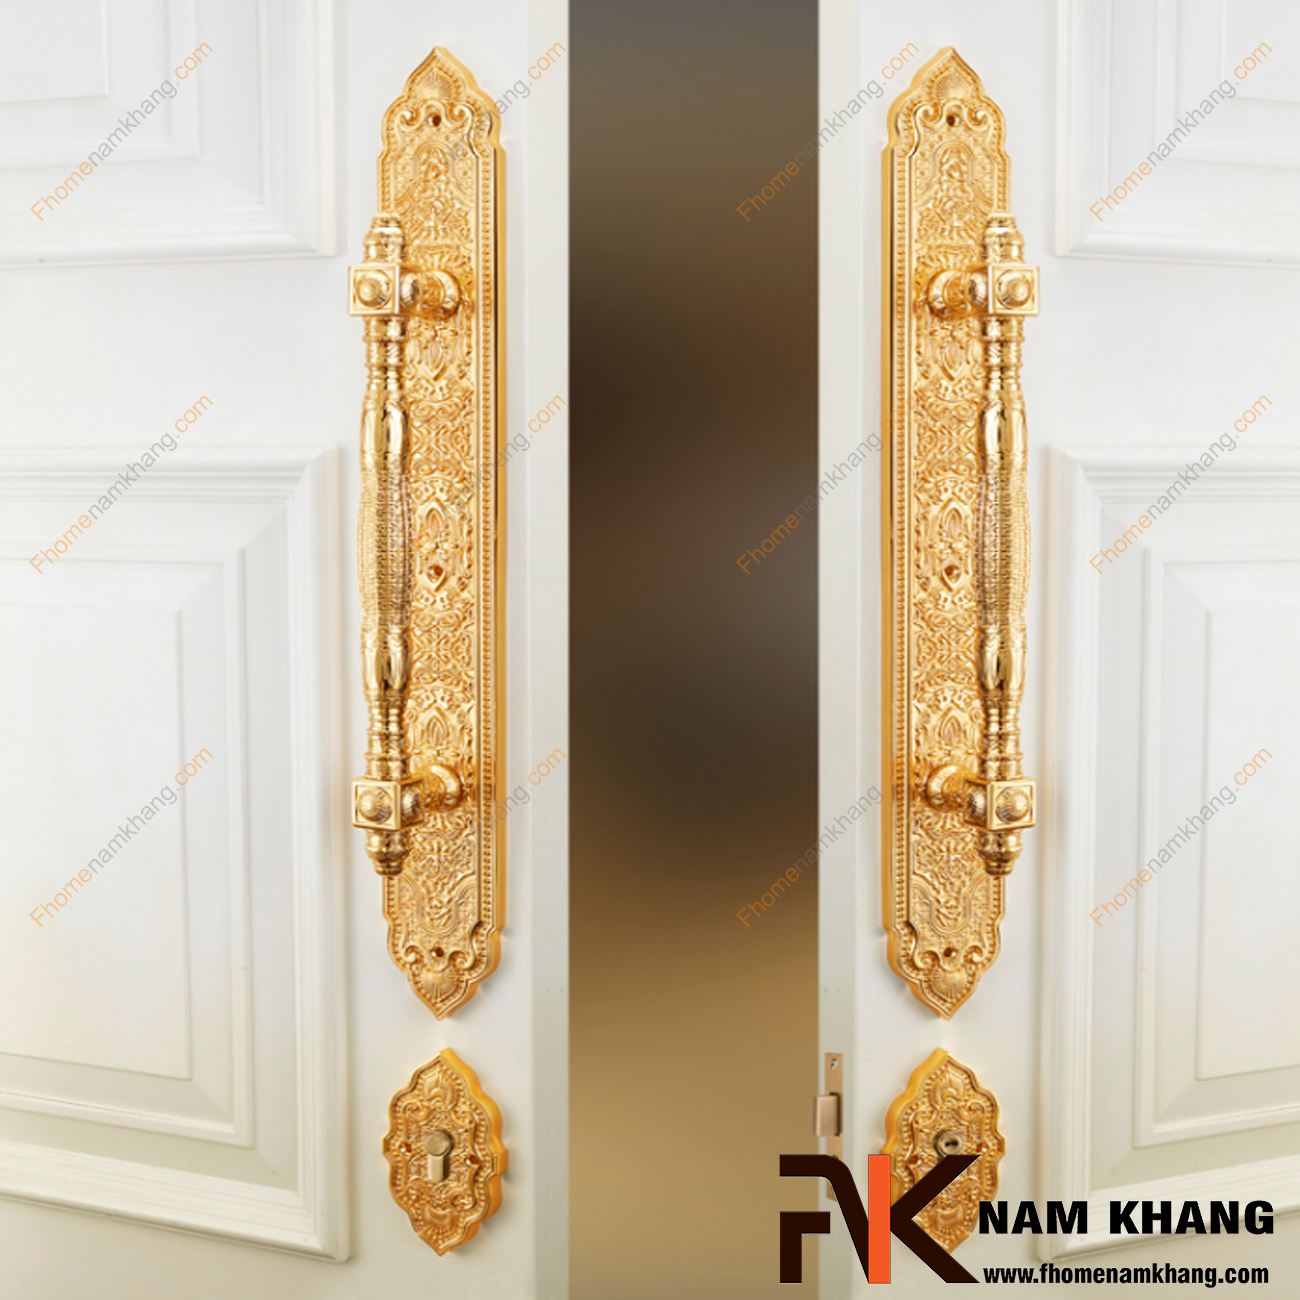 Khóa cửa sảnh phối hợp màu đồng vàng NK477XL-24K là dạng khóa cửa phối hợp đặc trưng khi kết hợp dòng khóa thân rời và tay nắm cửa sảnh lớn.